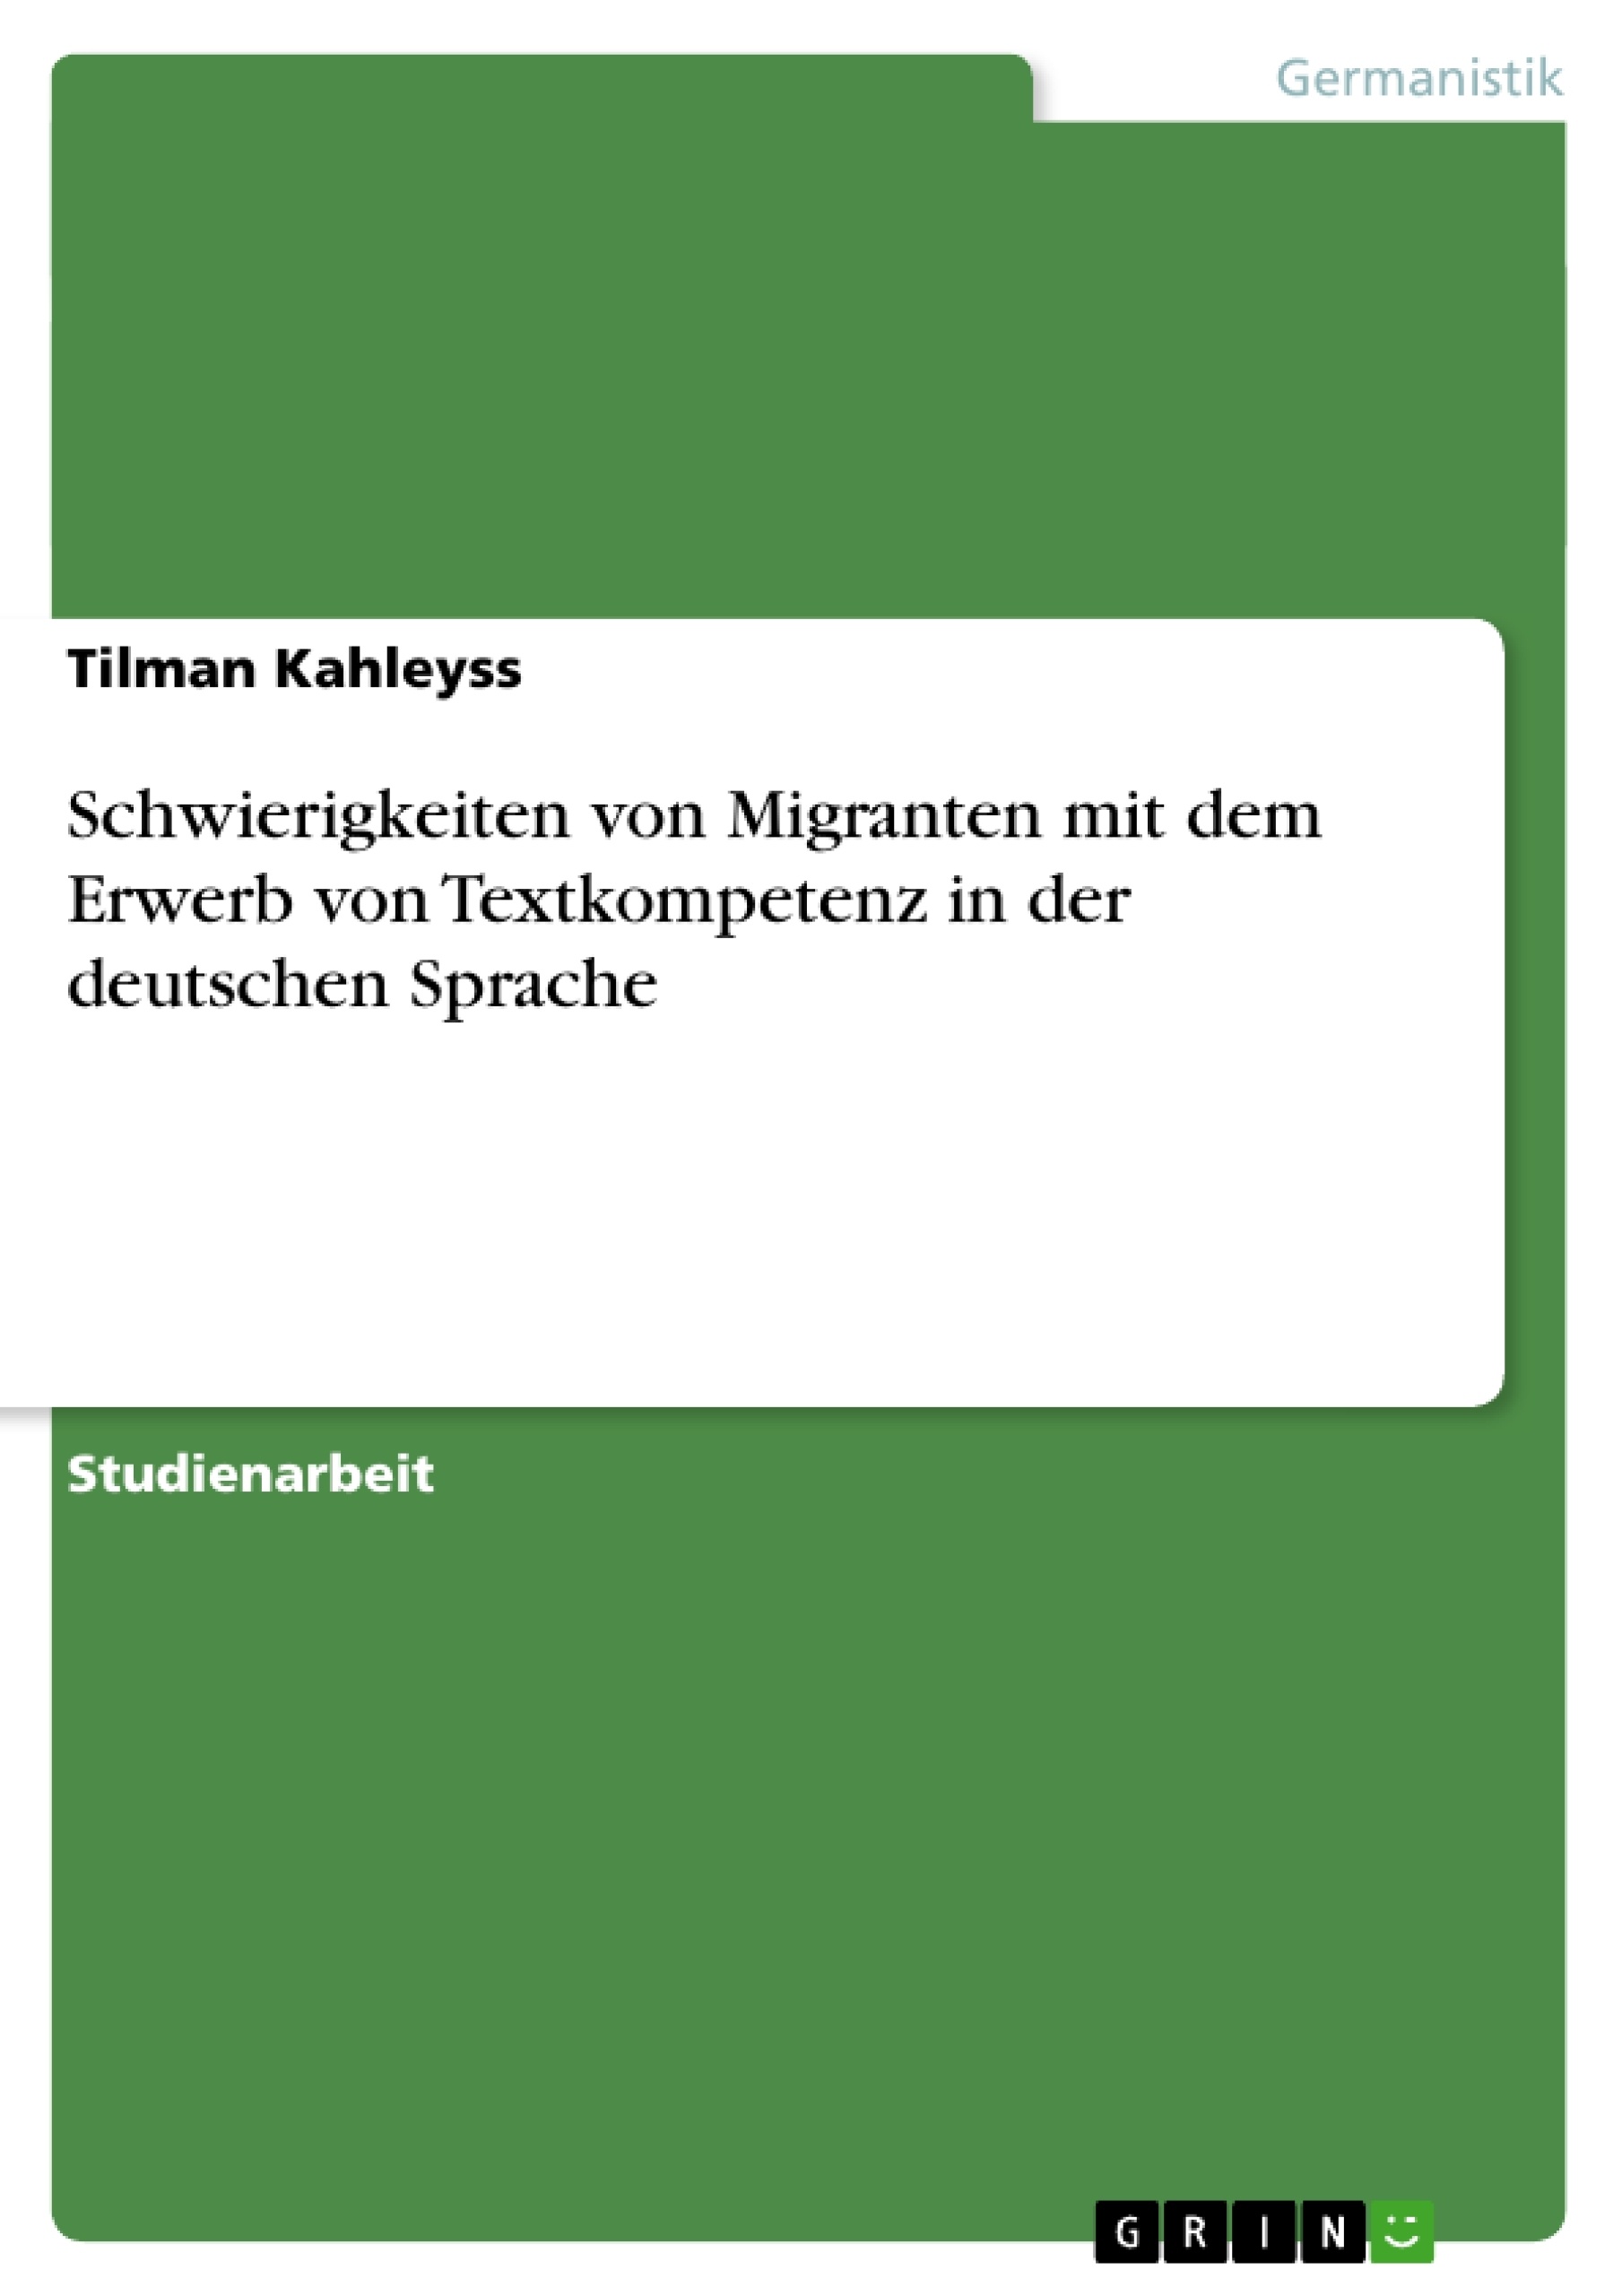 Titre: Schwierigkeiten von Migranten mit dem Erwerb von Textkompetenz in der deutschen Sprache